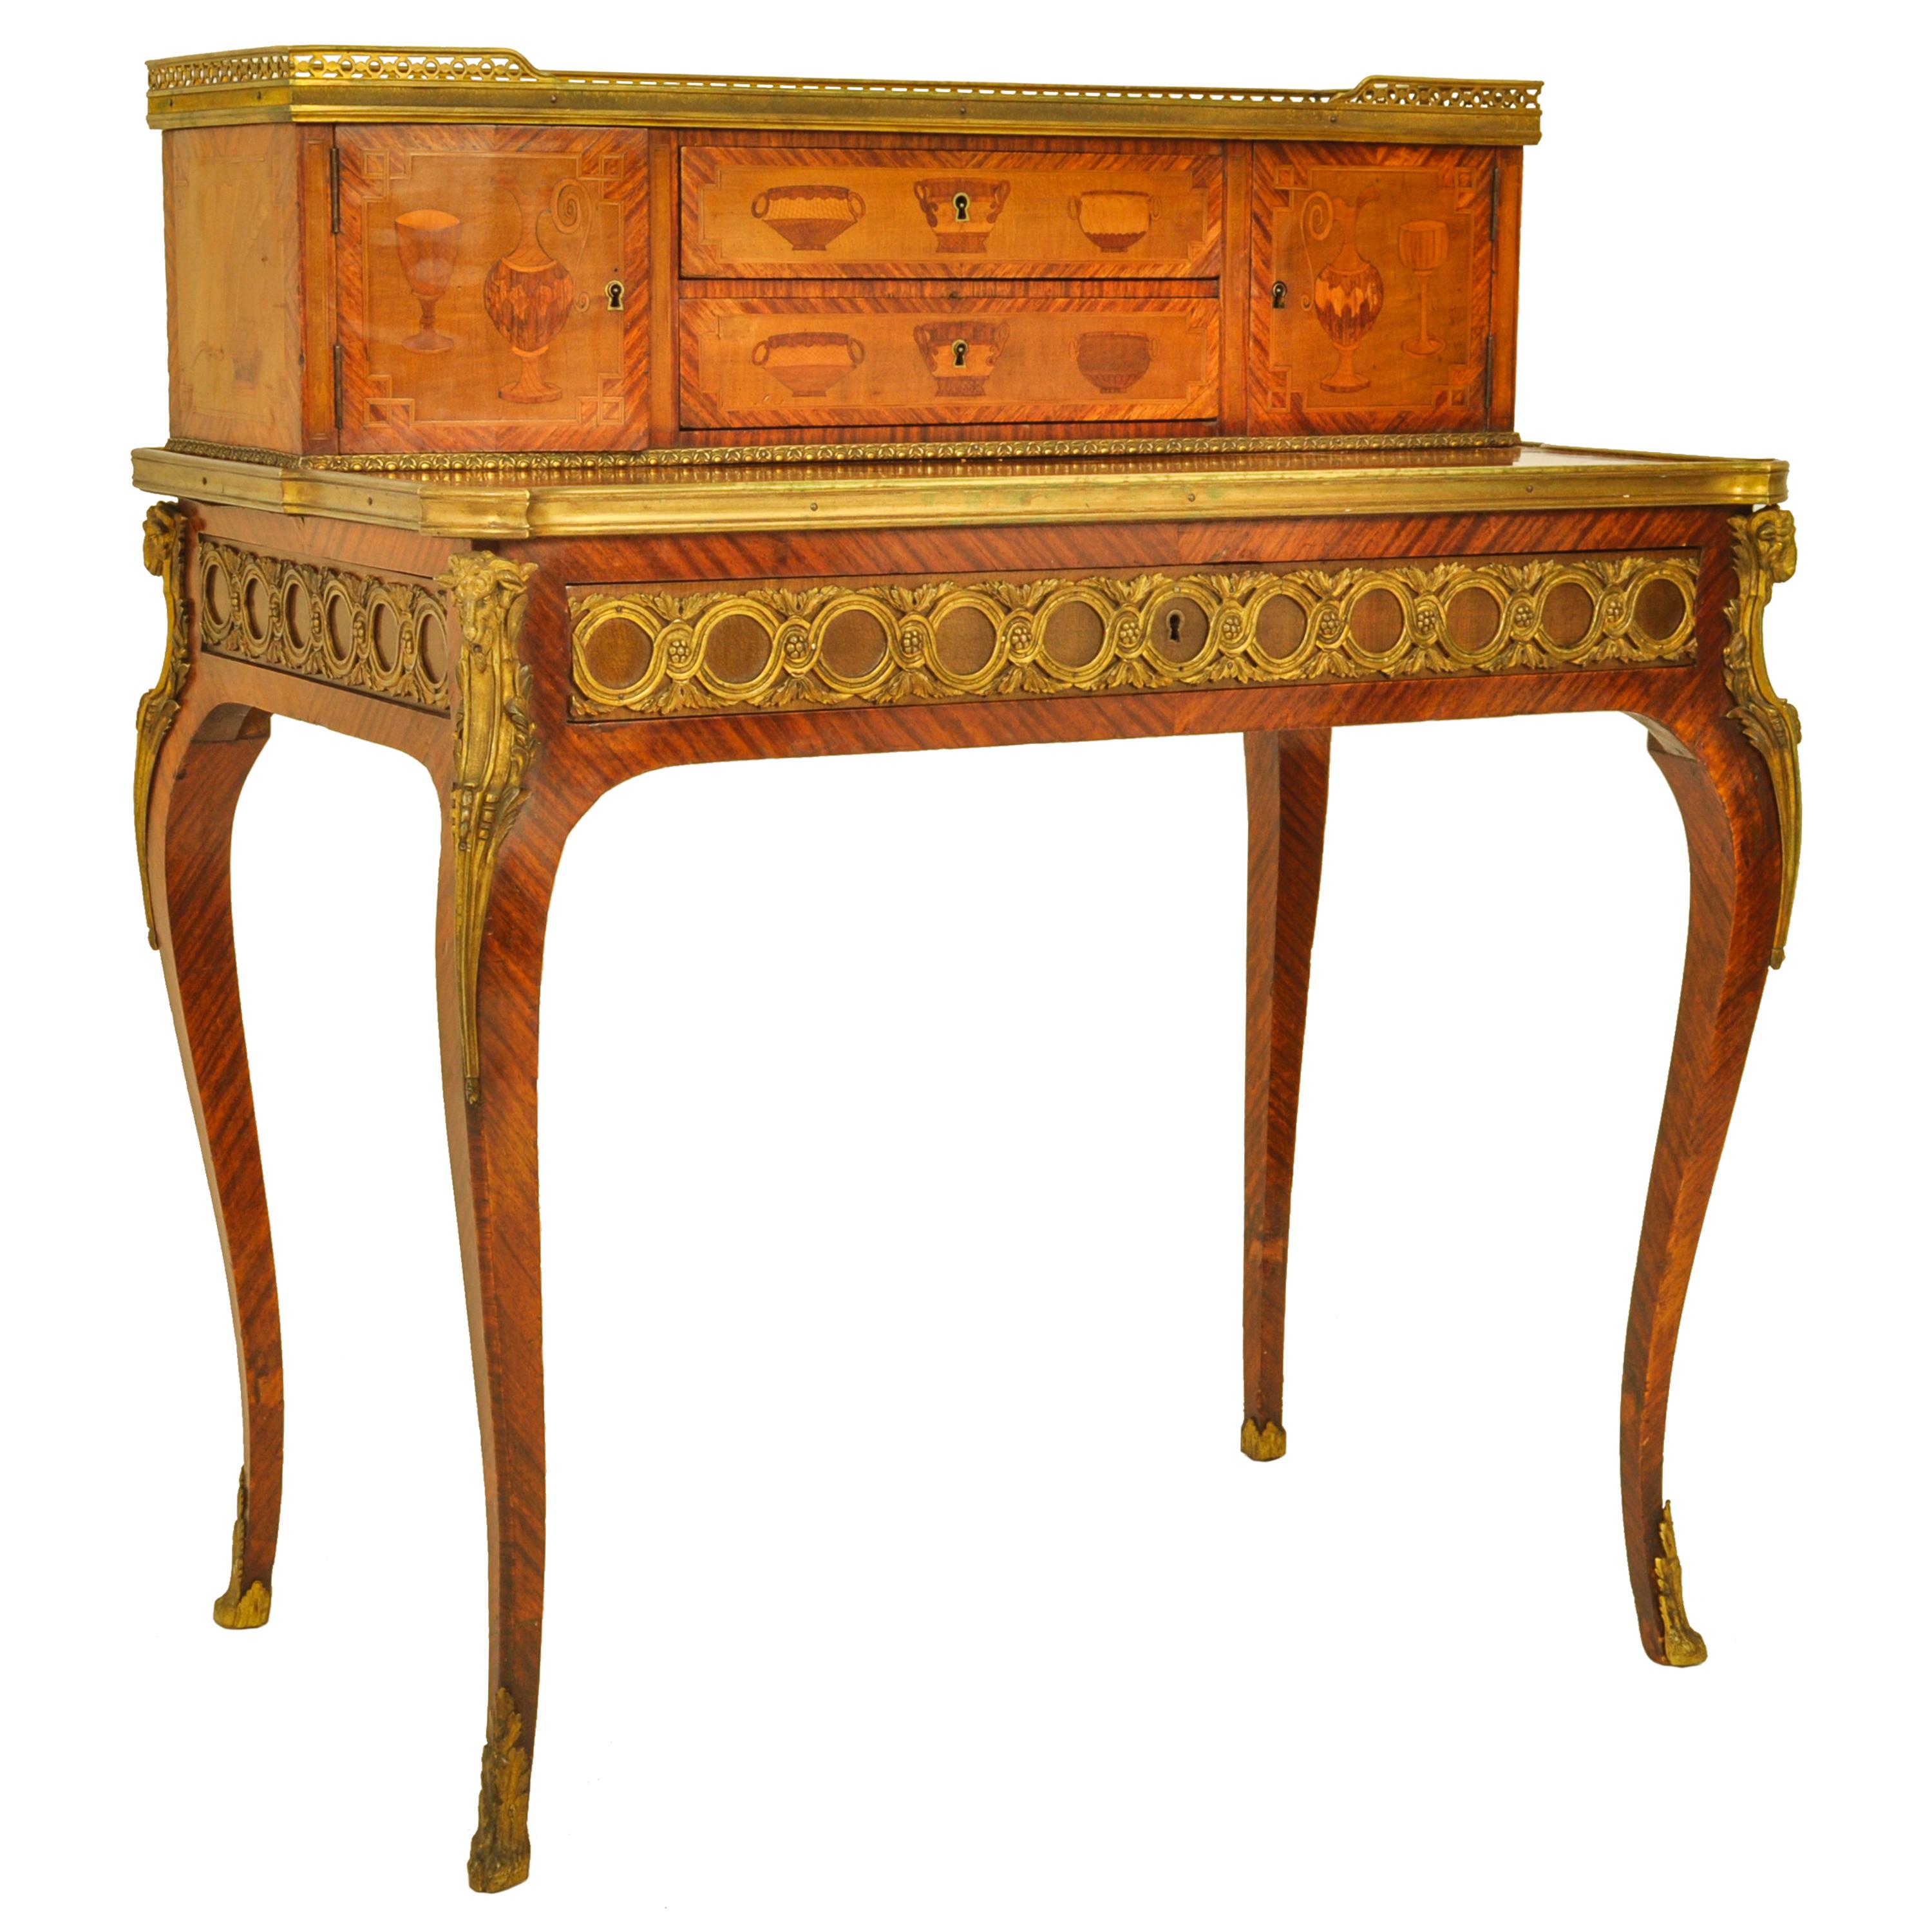 French Antique Louis XV Ormolu Marquetry Bonheur Du Jour Desk Roger Vandercruse 1780  For Sale